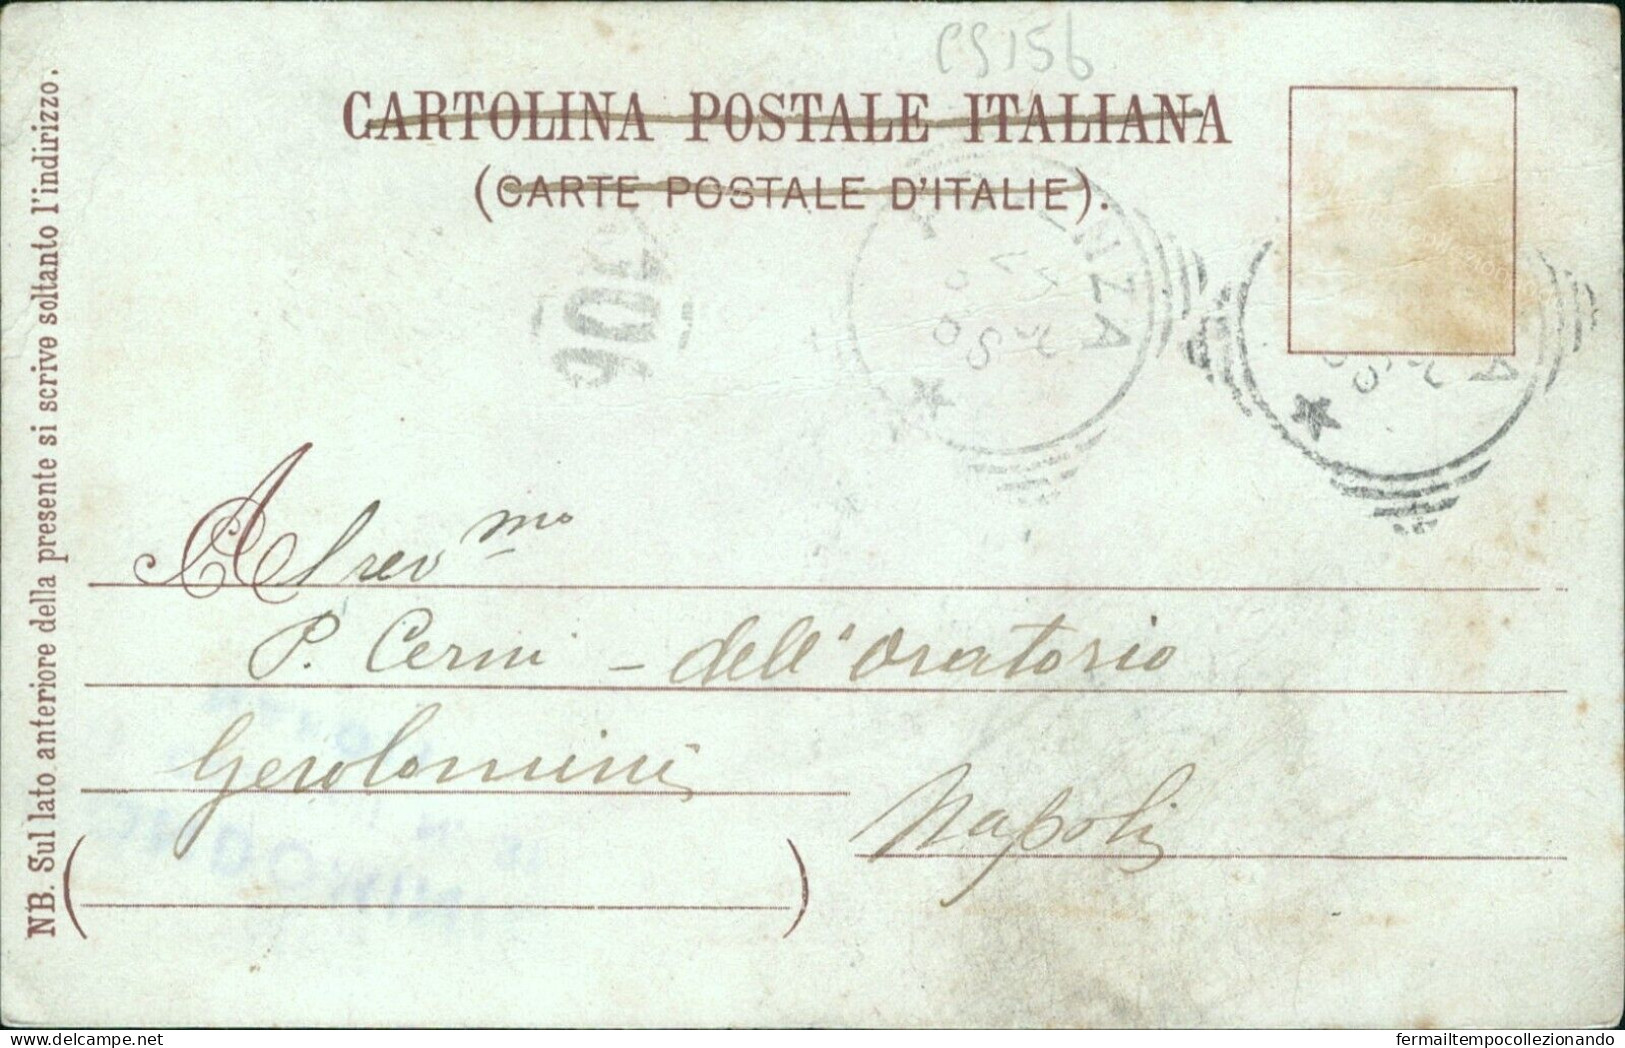 Cs156 Cartolina Ricordo Di Potenza Citta'1900 Basilicata - Potenza